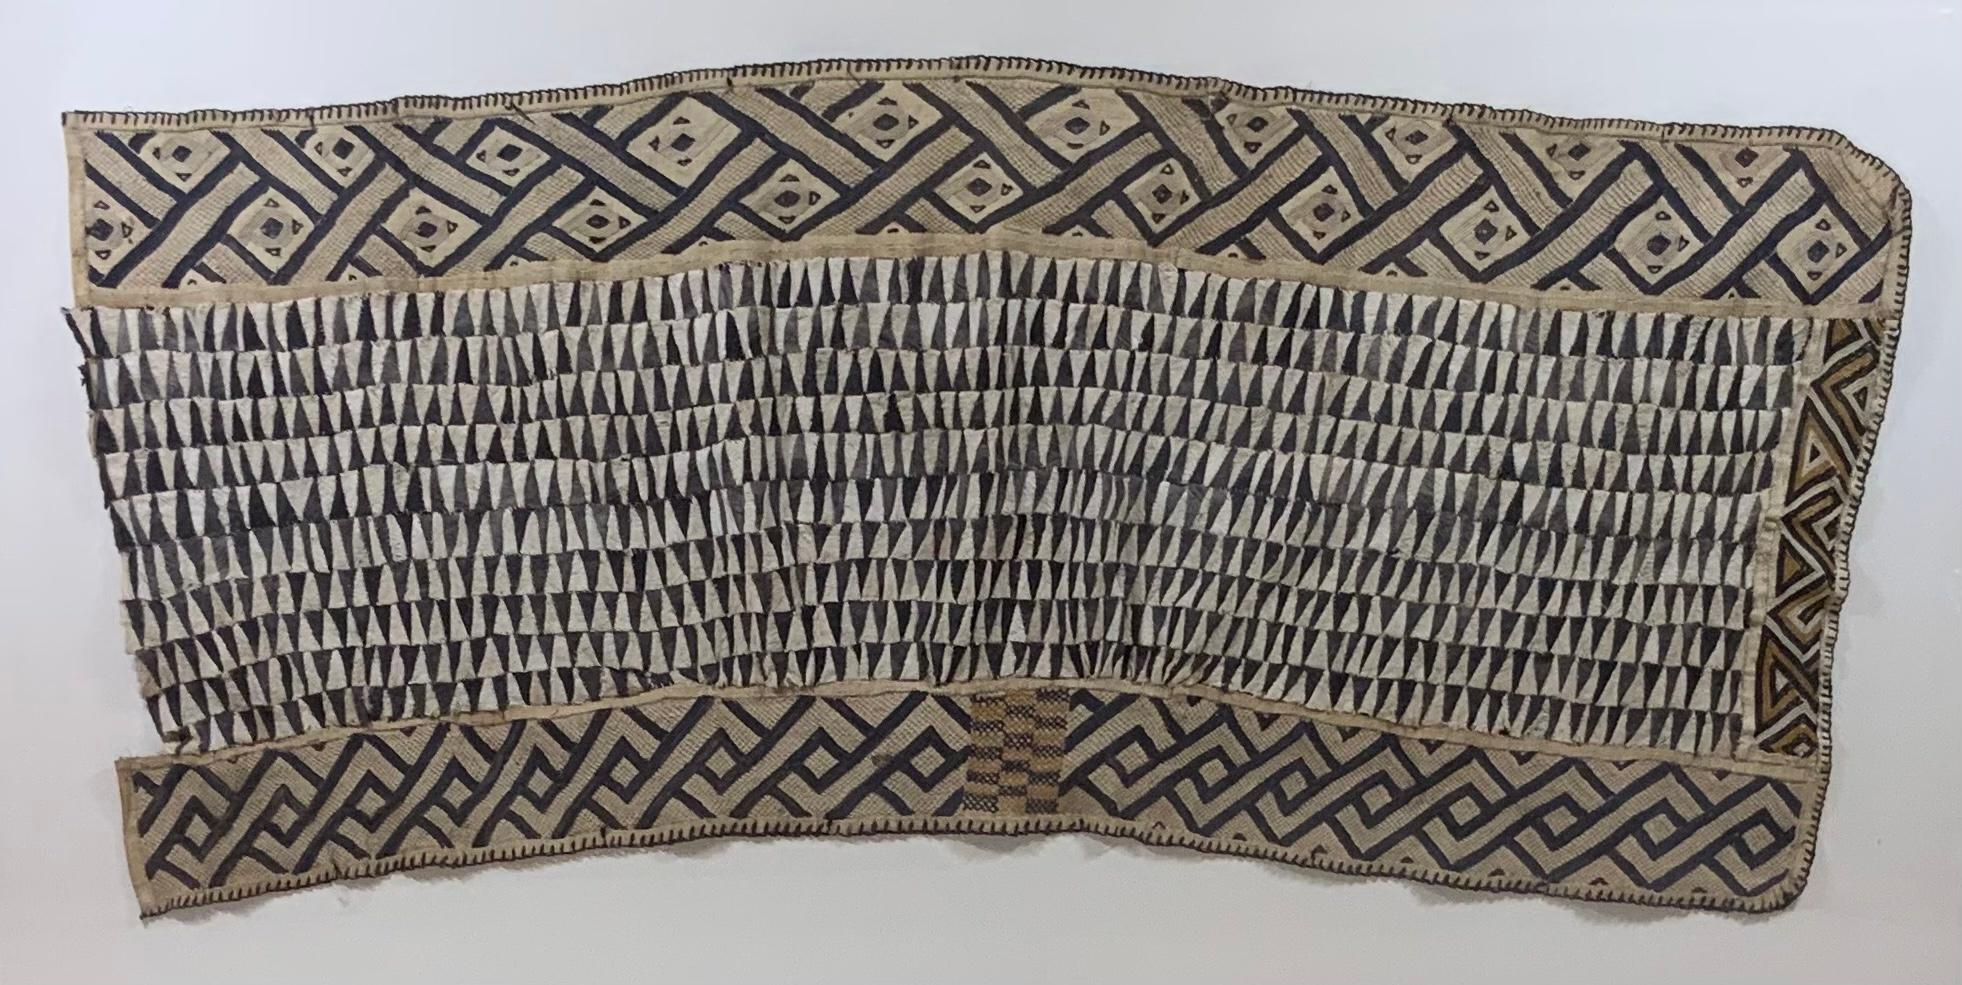 Professionell Museum montiert außergewöhnliche antike afrikanische Textil mit braunen kleinen Textilfragmente in das geometrische Muster in Bast und Baumwolle Patchwork gewebt, Interlock Grenze appliziert Panel um drei Seiten des